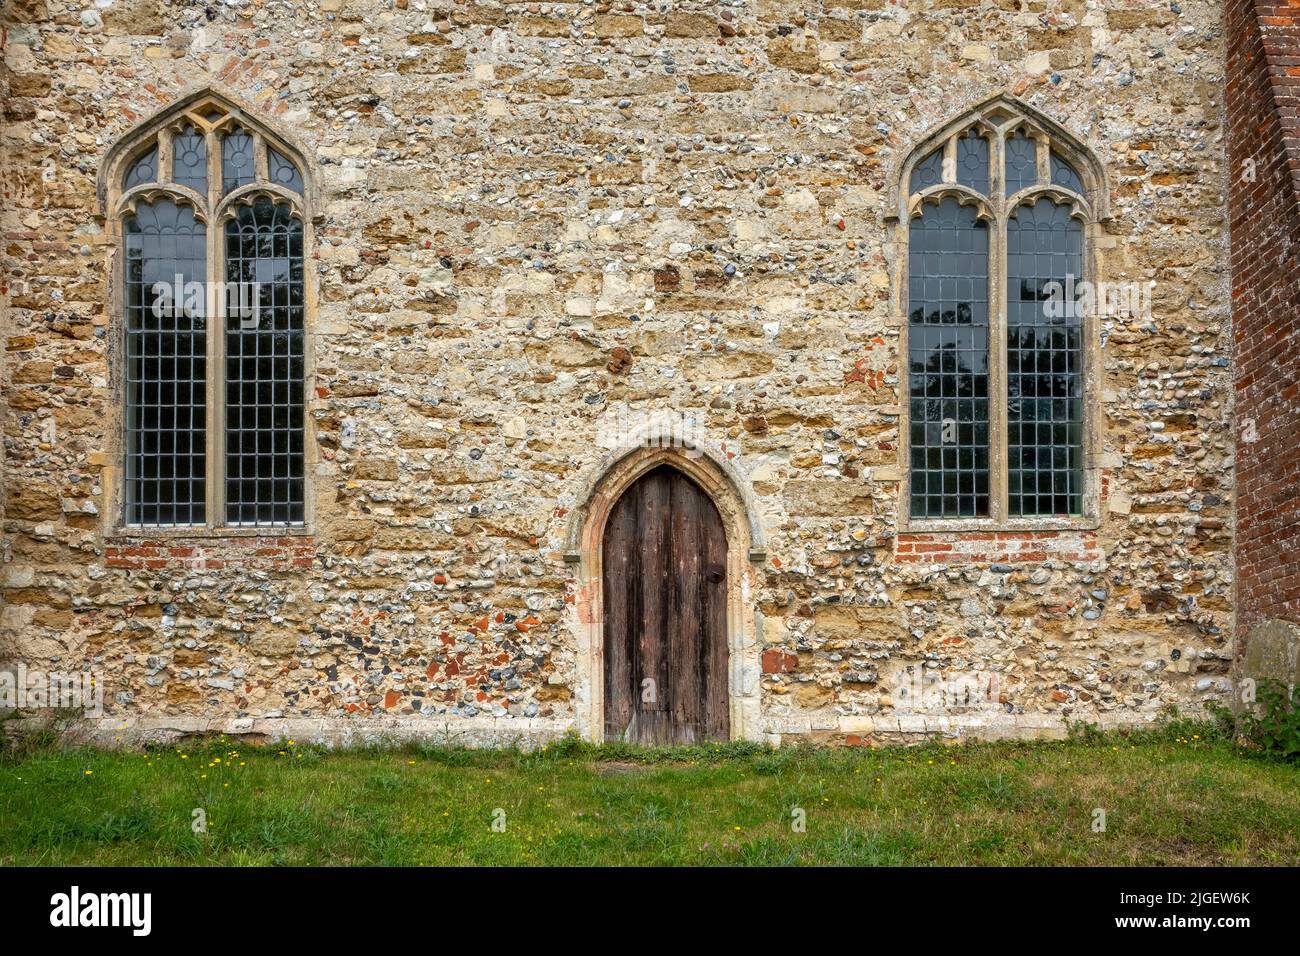 Detalles de la iglesia de San Miguel Tunstall Suffolk que muestra una pequeña puerta y ventanas de vidrio plano Foto de stock